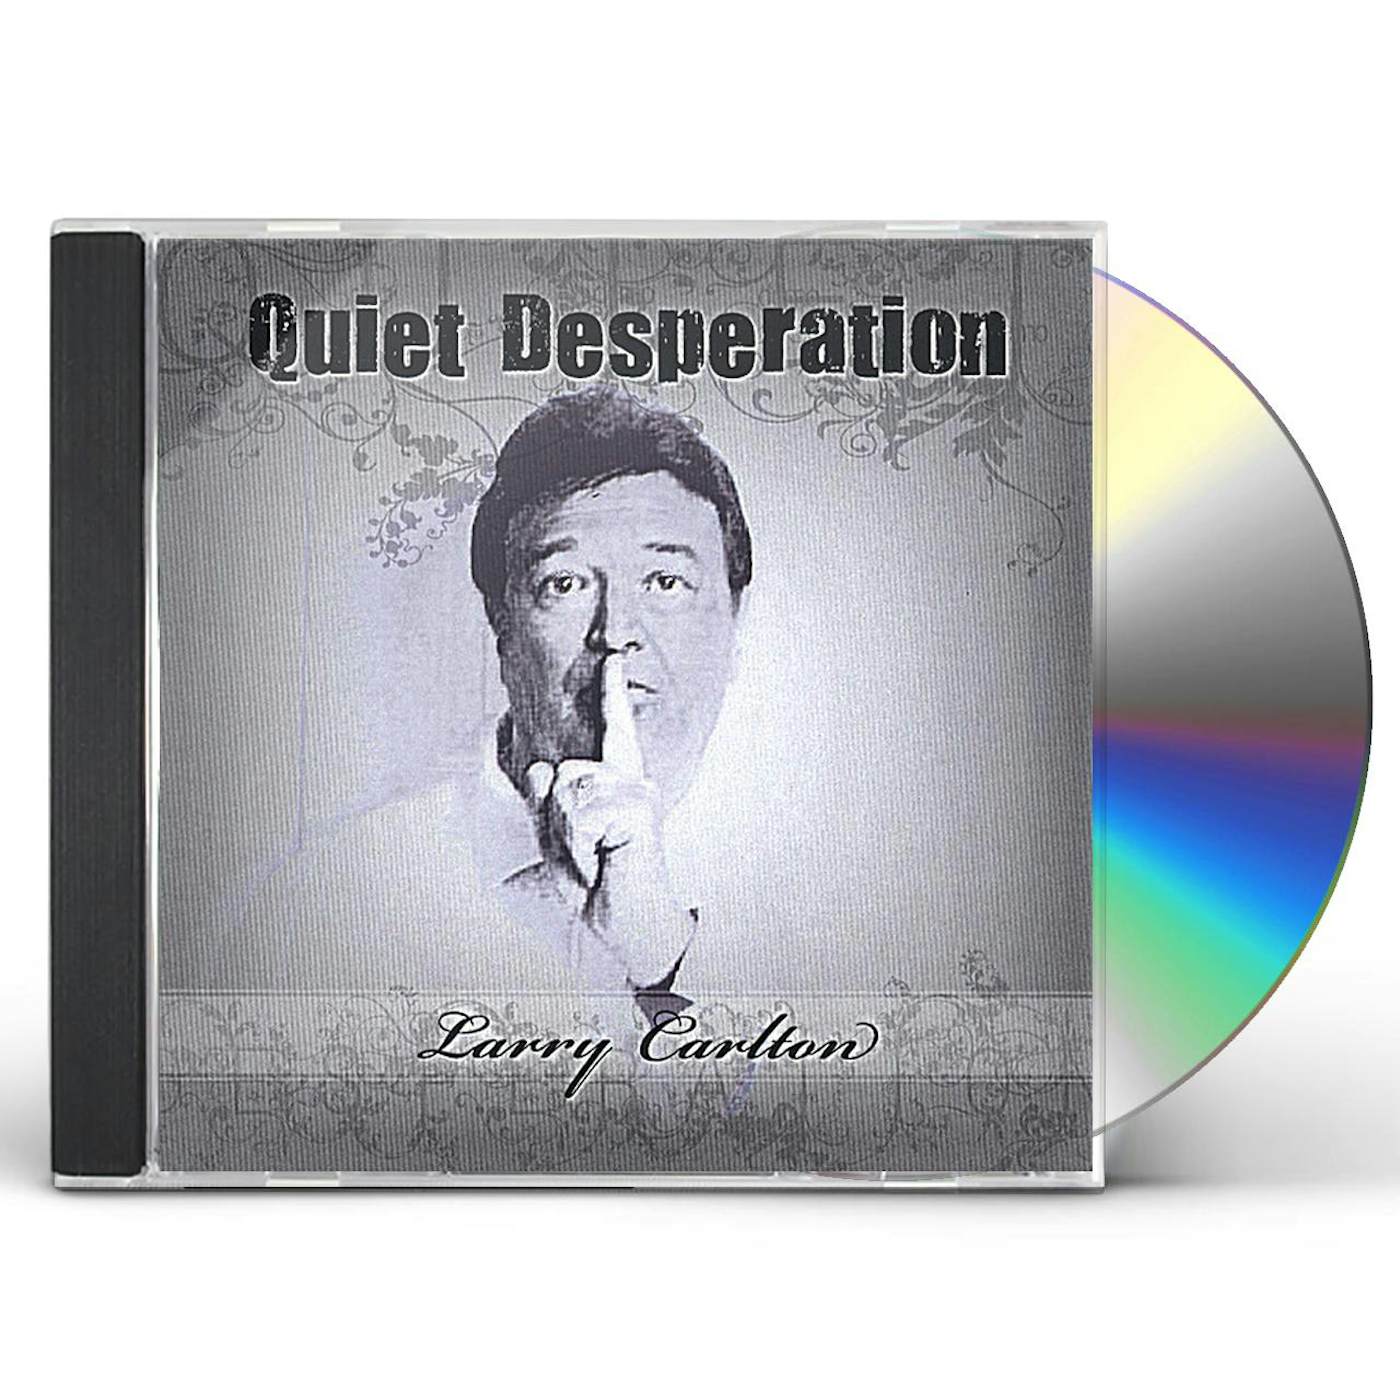 Larry Carlton QUIET DESPERATION (SINGLE SONG) CD